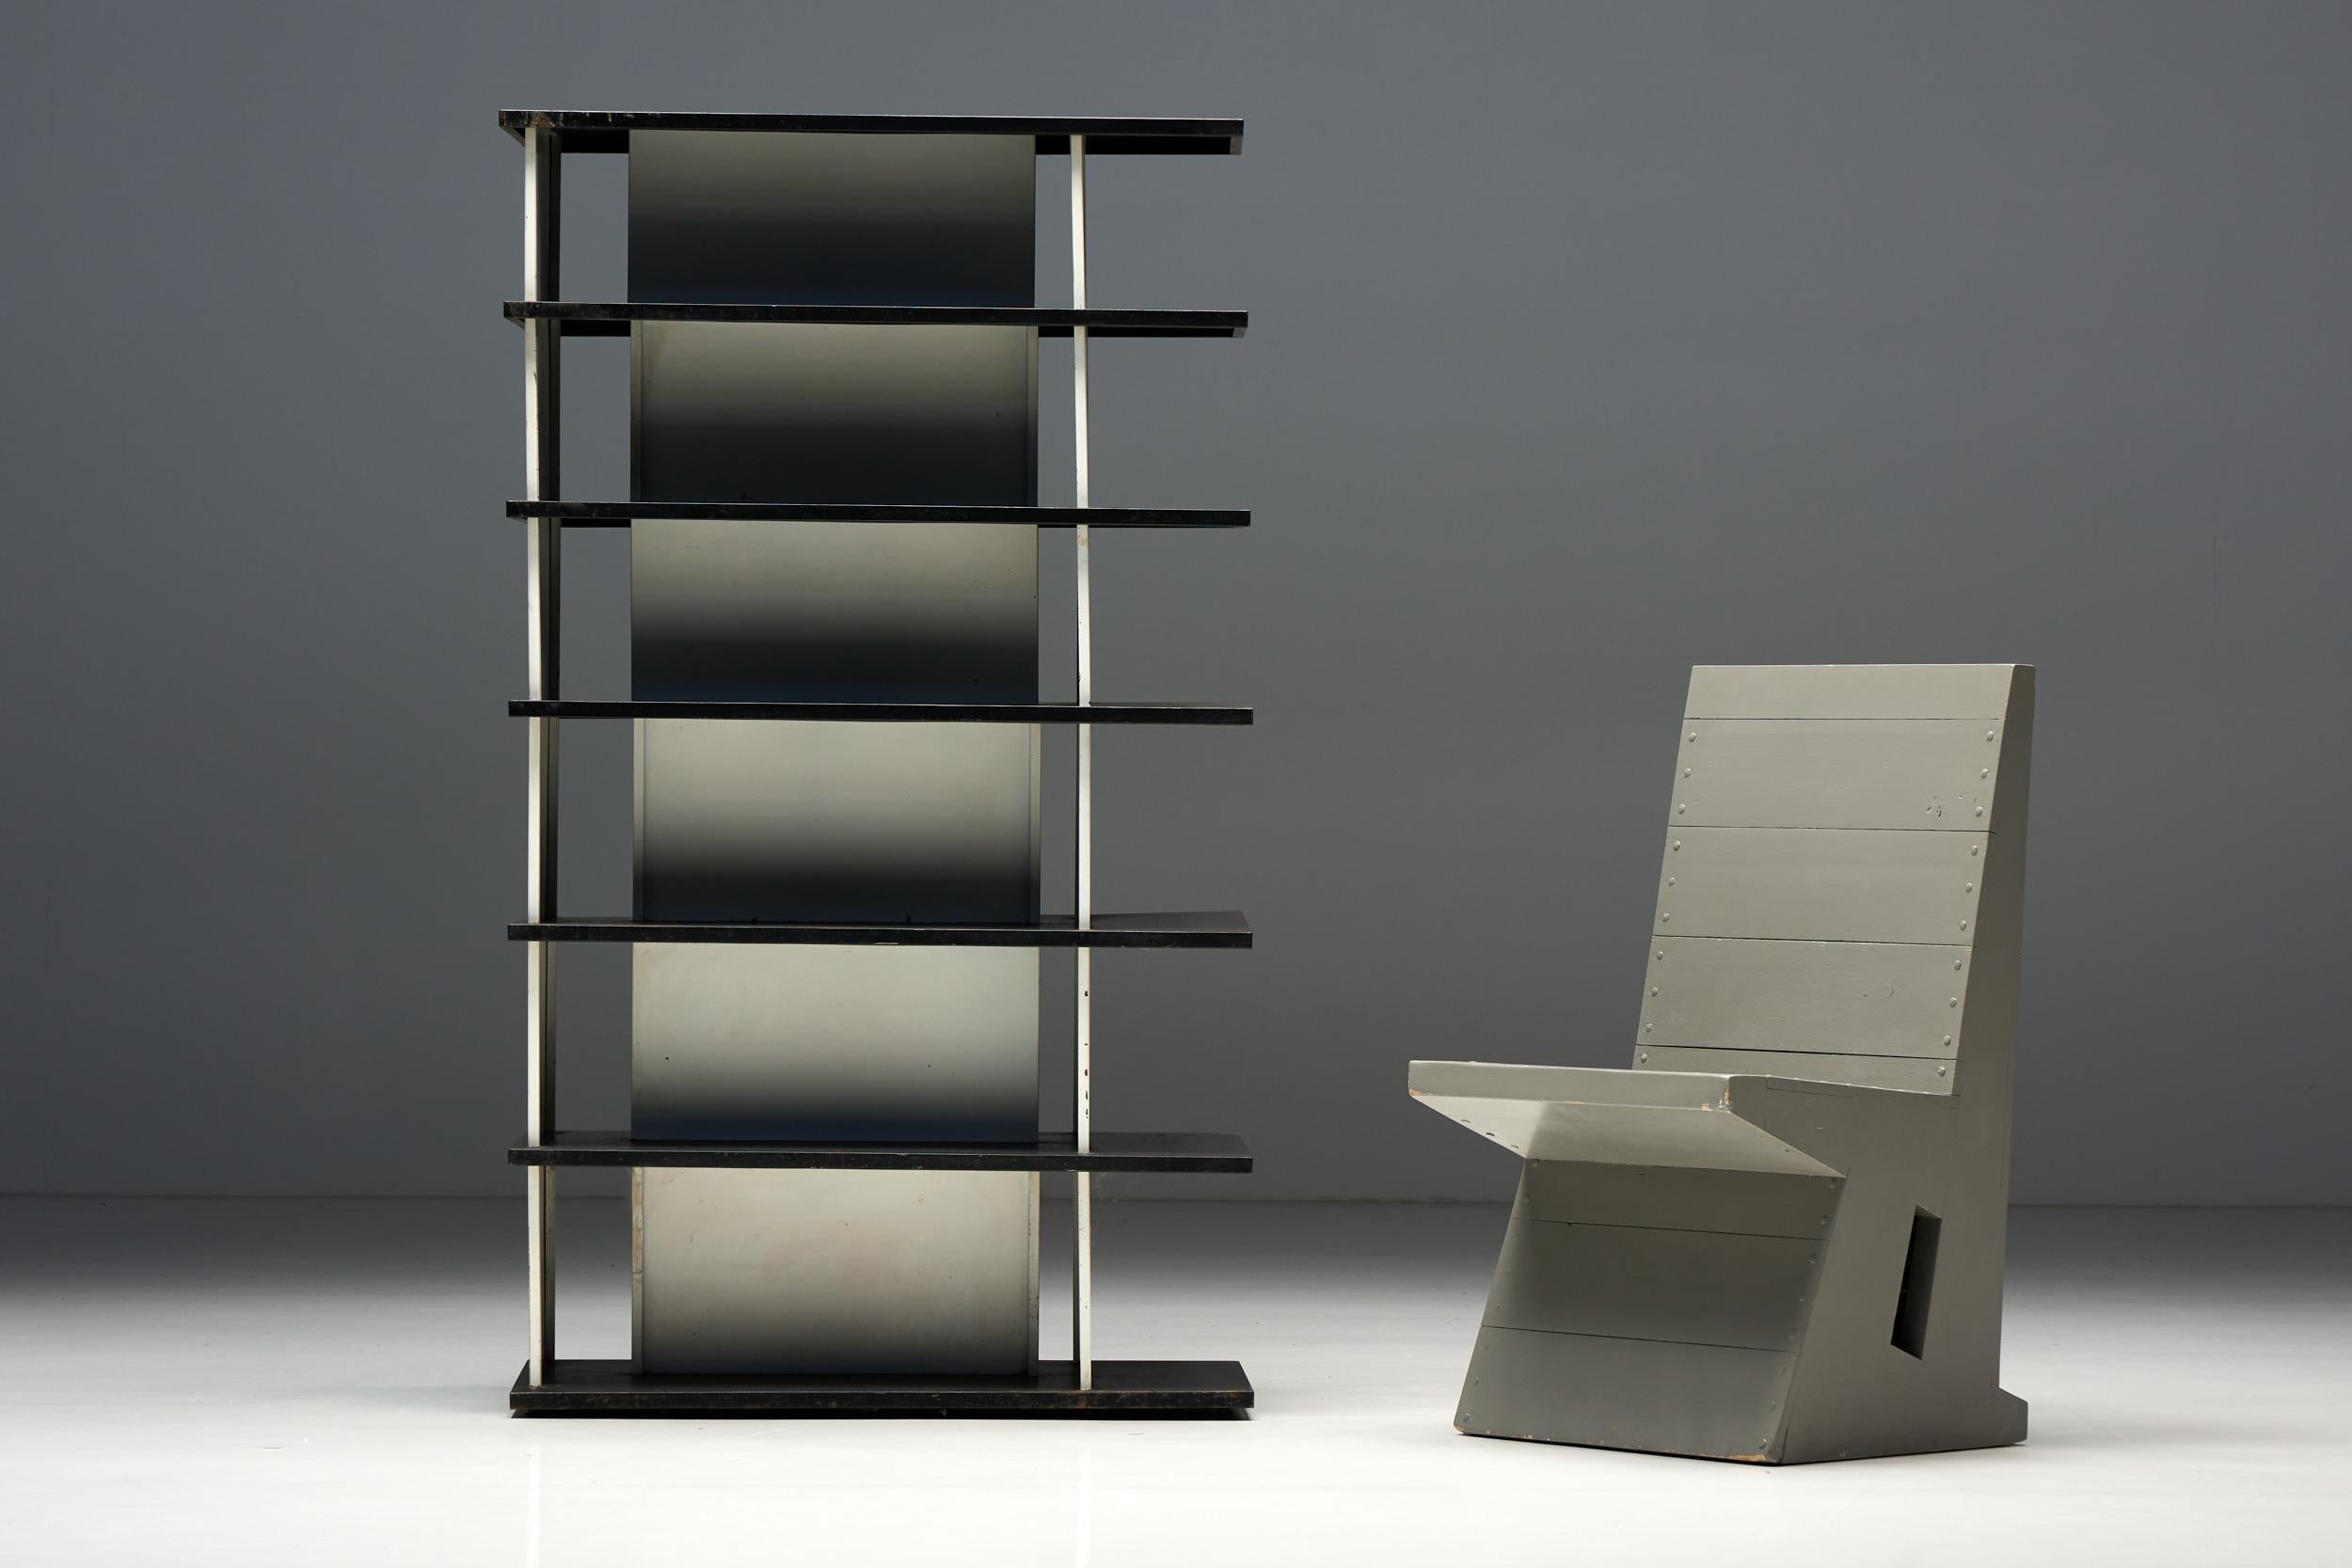 Wim Rietveld ; Gerrit Rietveld ; séparation de pièce ; bibliothèque ; industriel ; étagère ; design industriel ; minimaliste ; fonctionnalité ; simplicité ; années 1960 ;

Séparation de pièce industrielle de Wim ROOMS. Un meuble étonnant qui ajoute